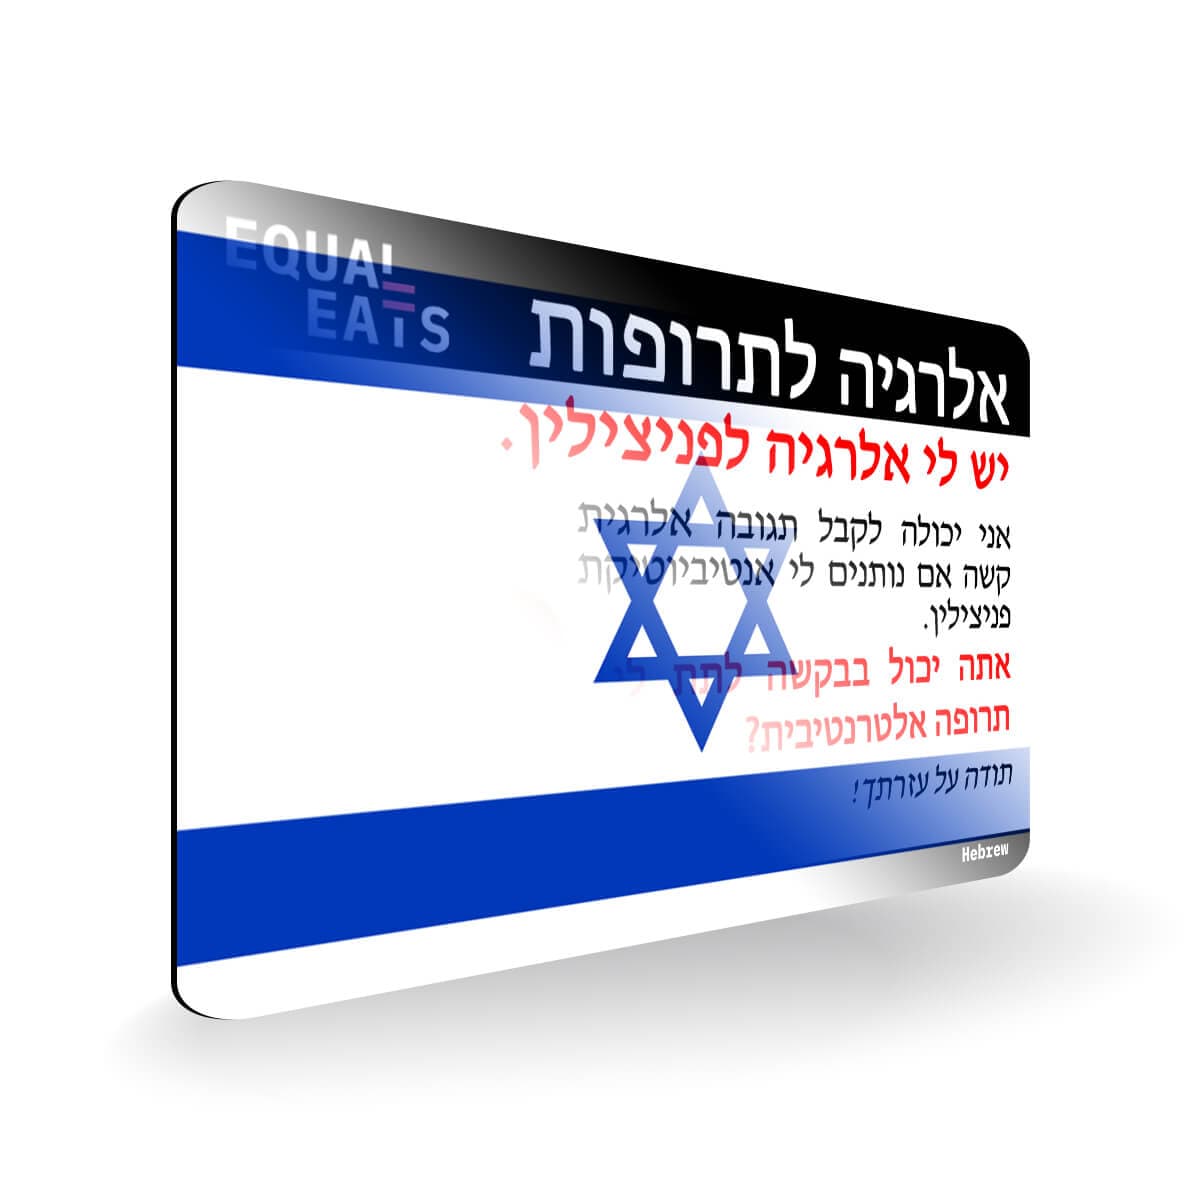 Penicillin Allergy in Hebrew. Penicillin medical ID Card for Israel